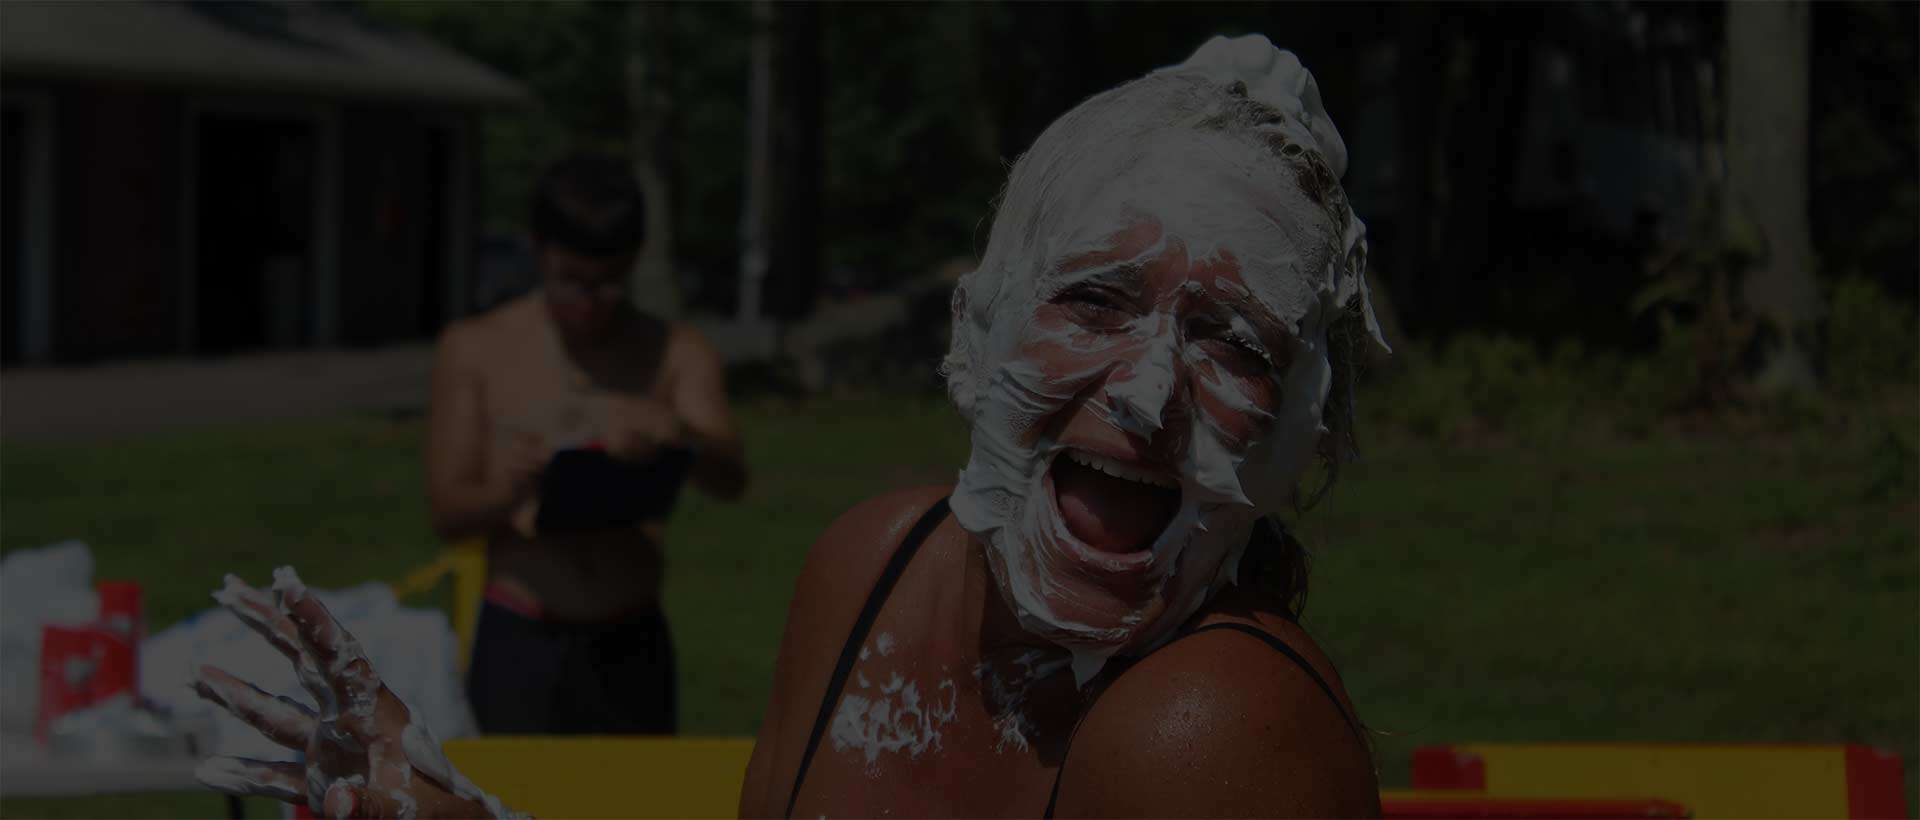 Girl Covered in Shaving cream - Woodloch Resort Double Dare